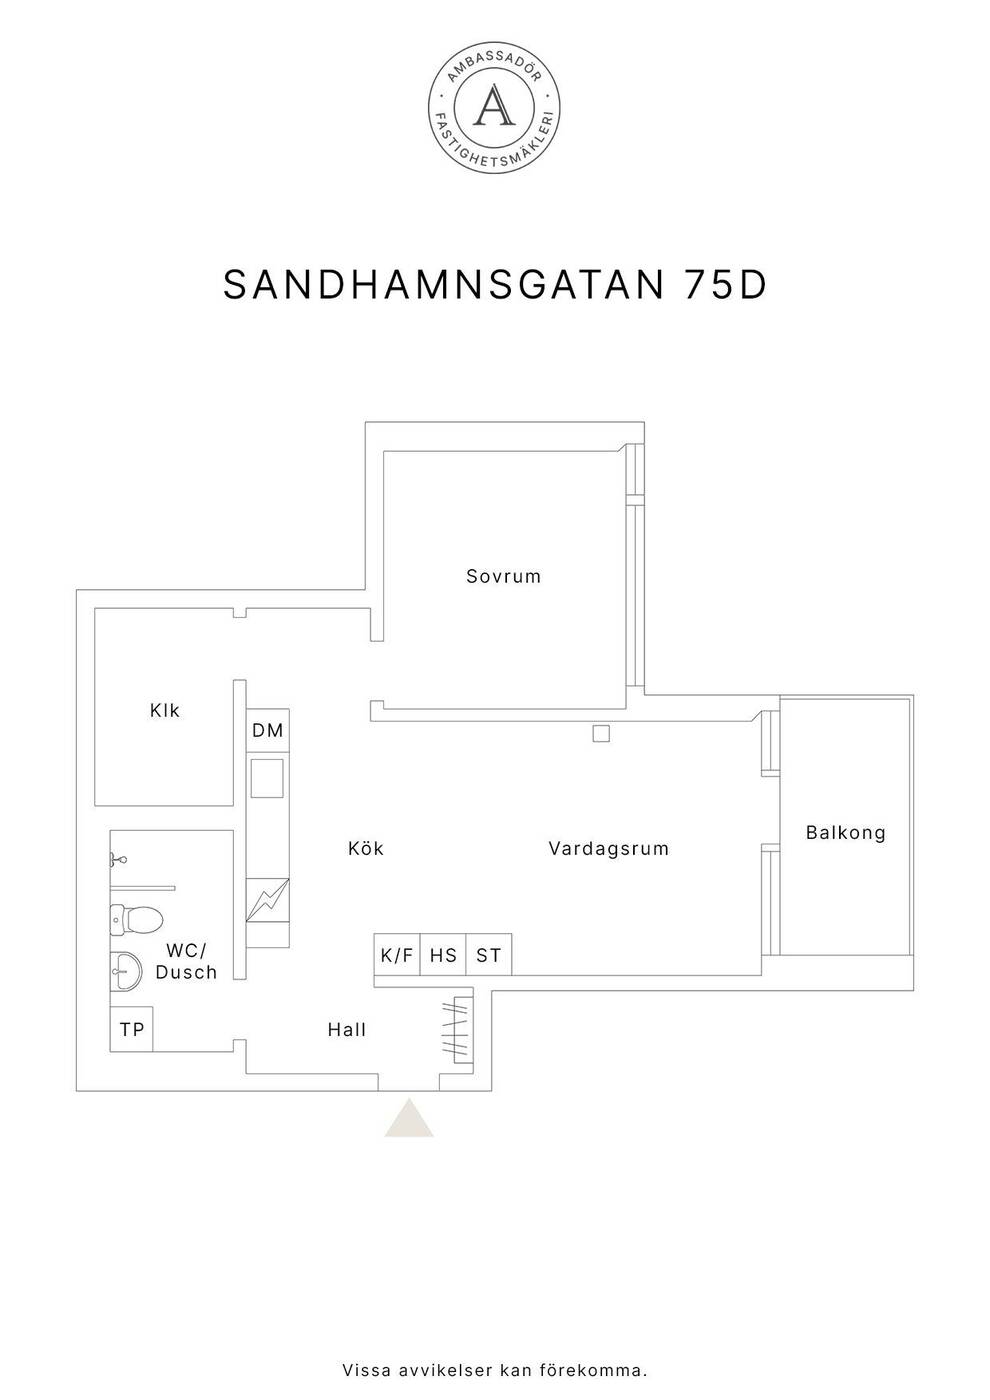 Sandhamnsgatan 75D copy